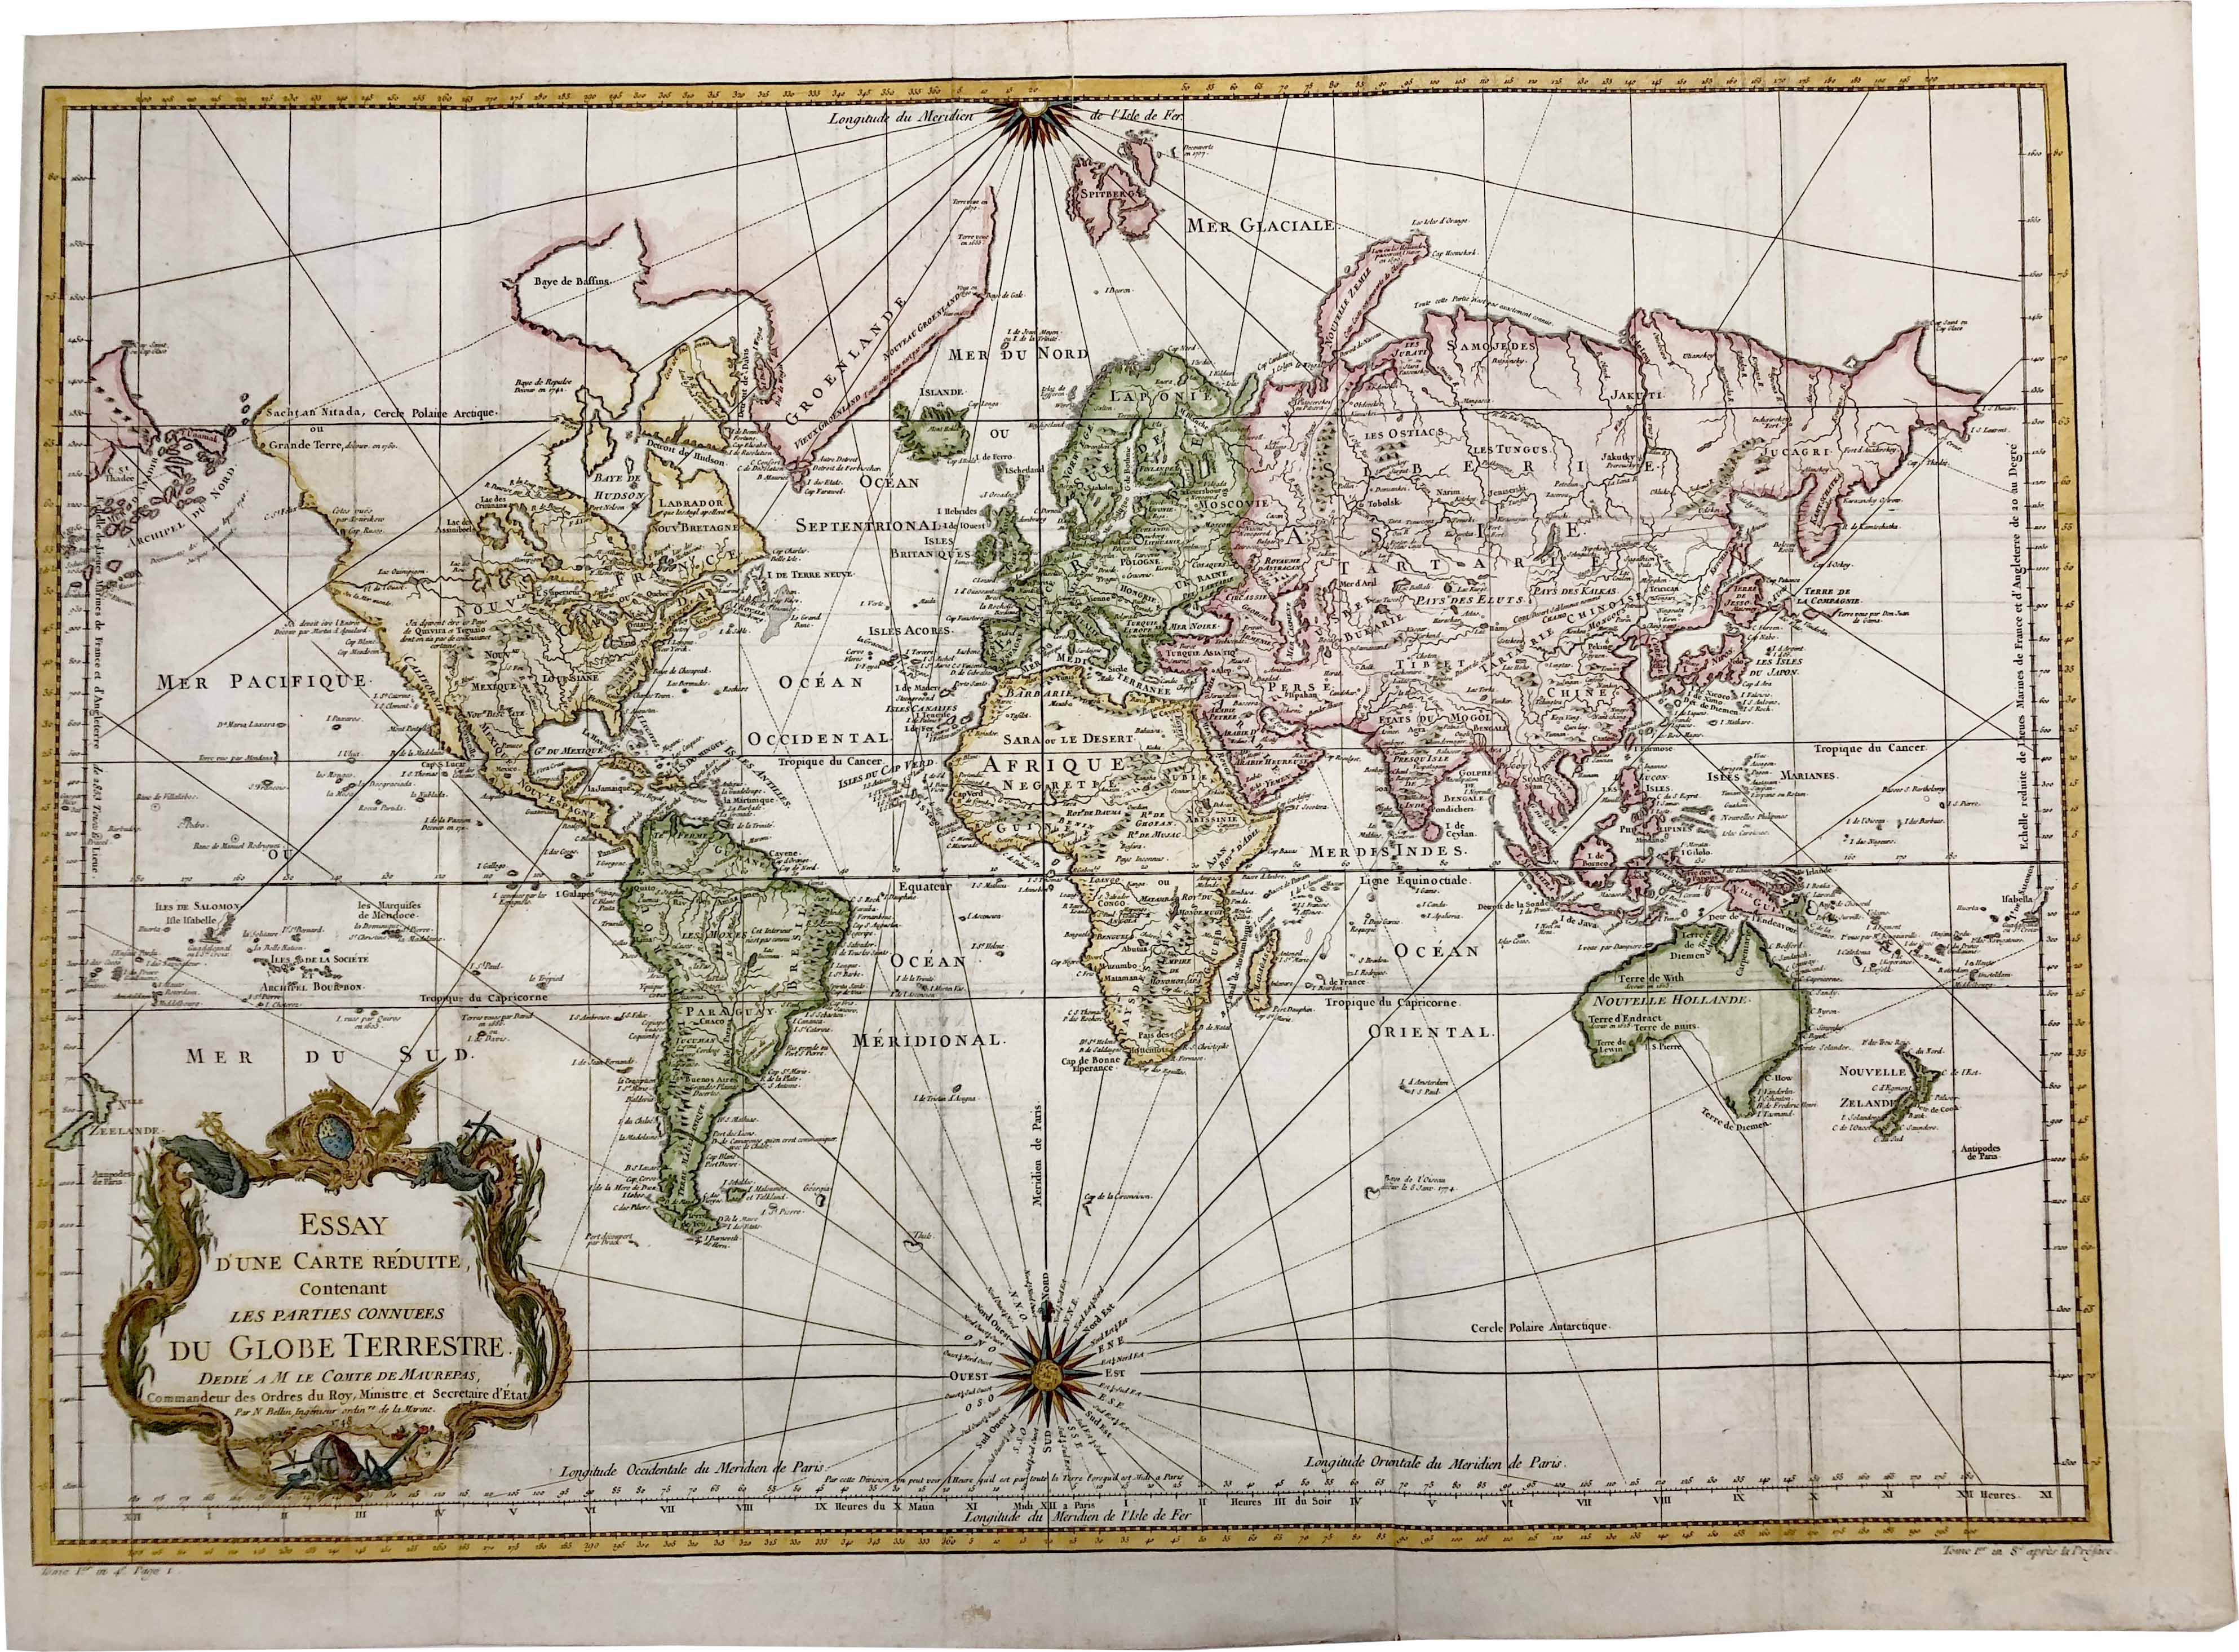 Weltkarte in der Zeit um 1778 von Jacques Nicolas Bellin